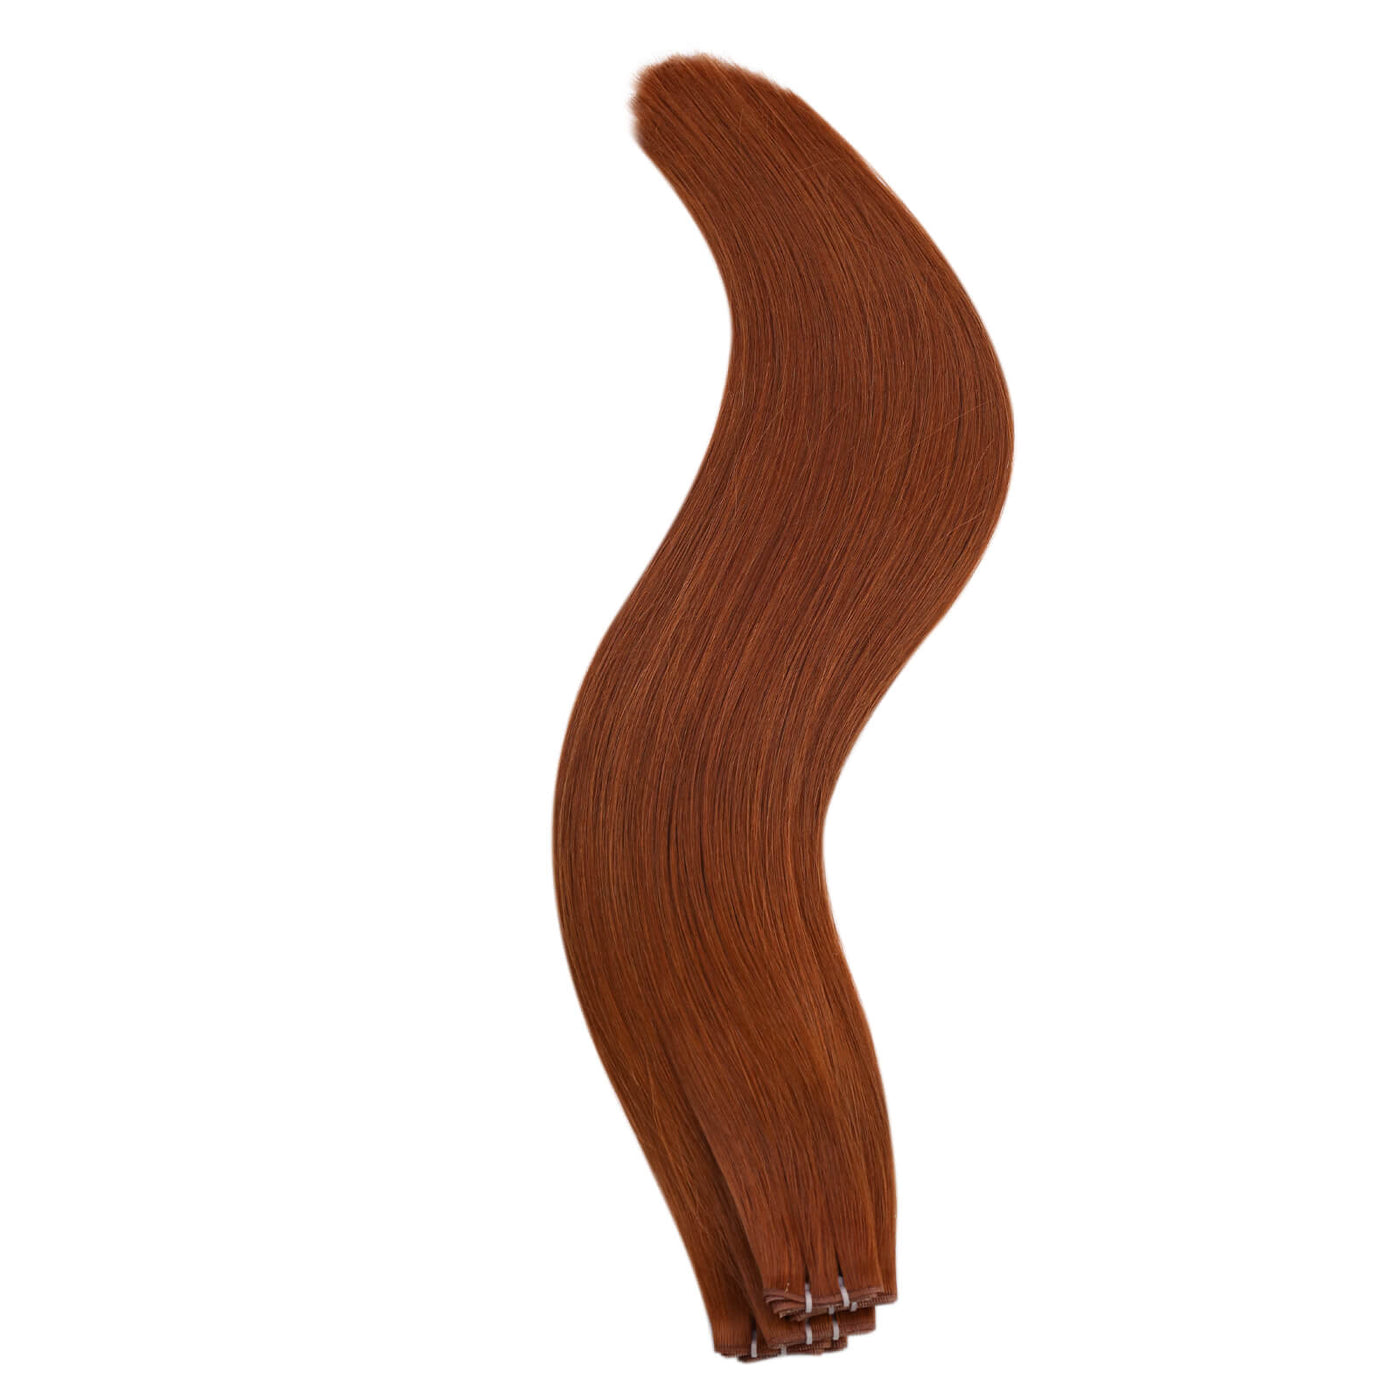 [virgin+]Genius Weft Hair Extensions virgin+ Hair Bundles Human Straight Weave Copper #33